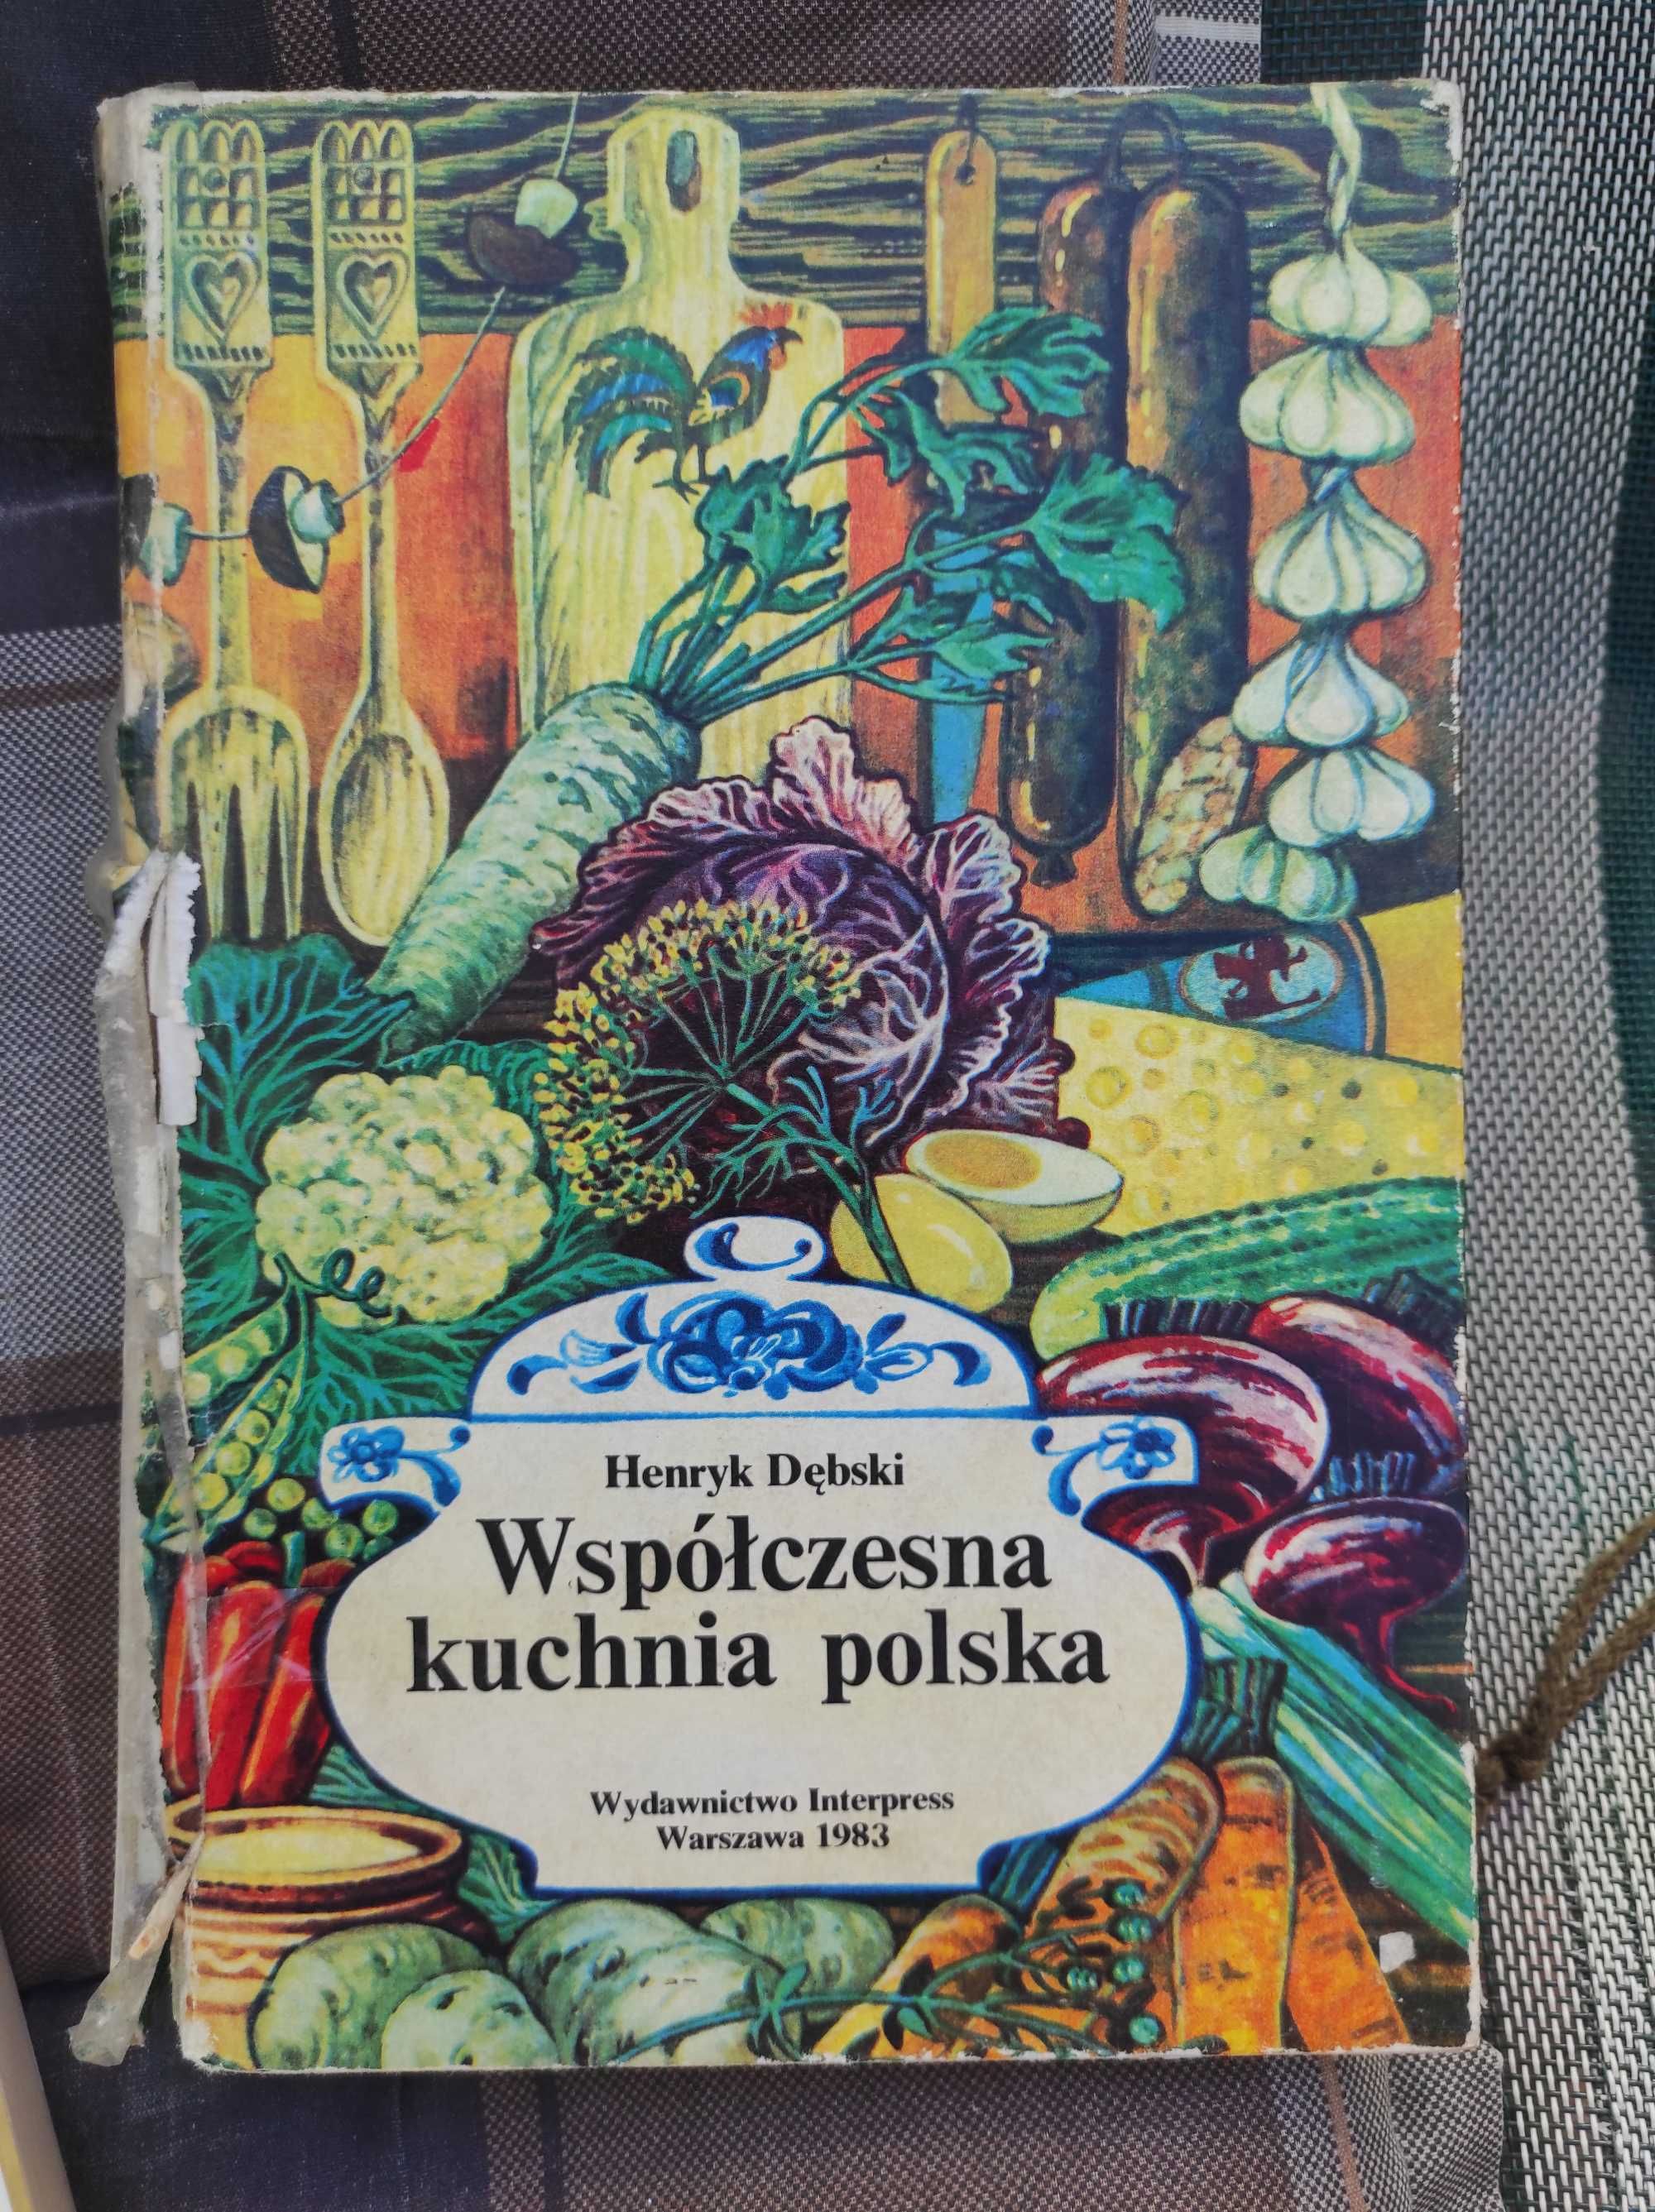 książka kucharska Henryk Dębski Współczesna kuchnia polska